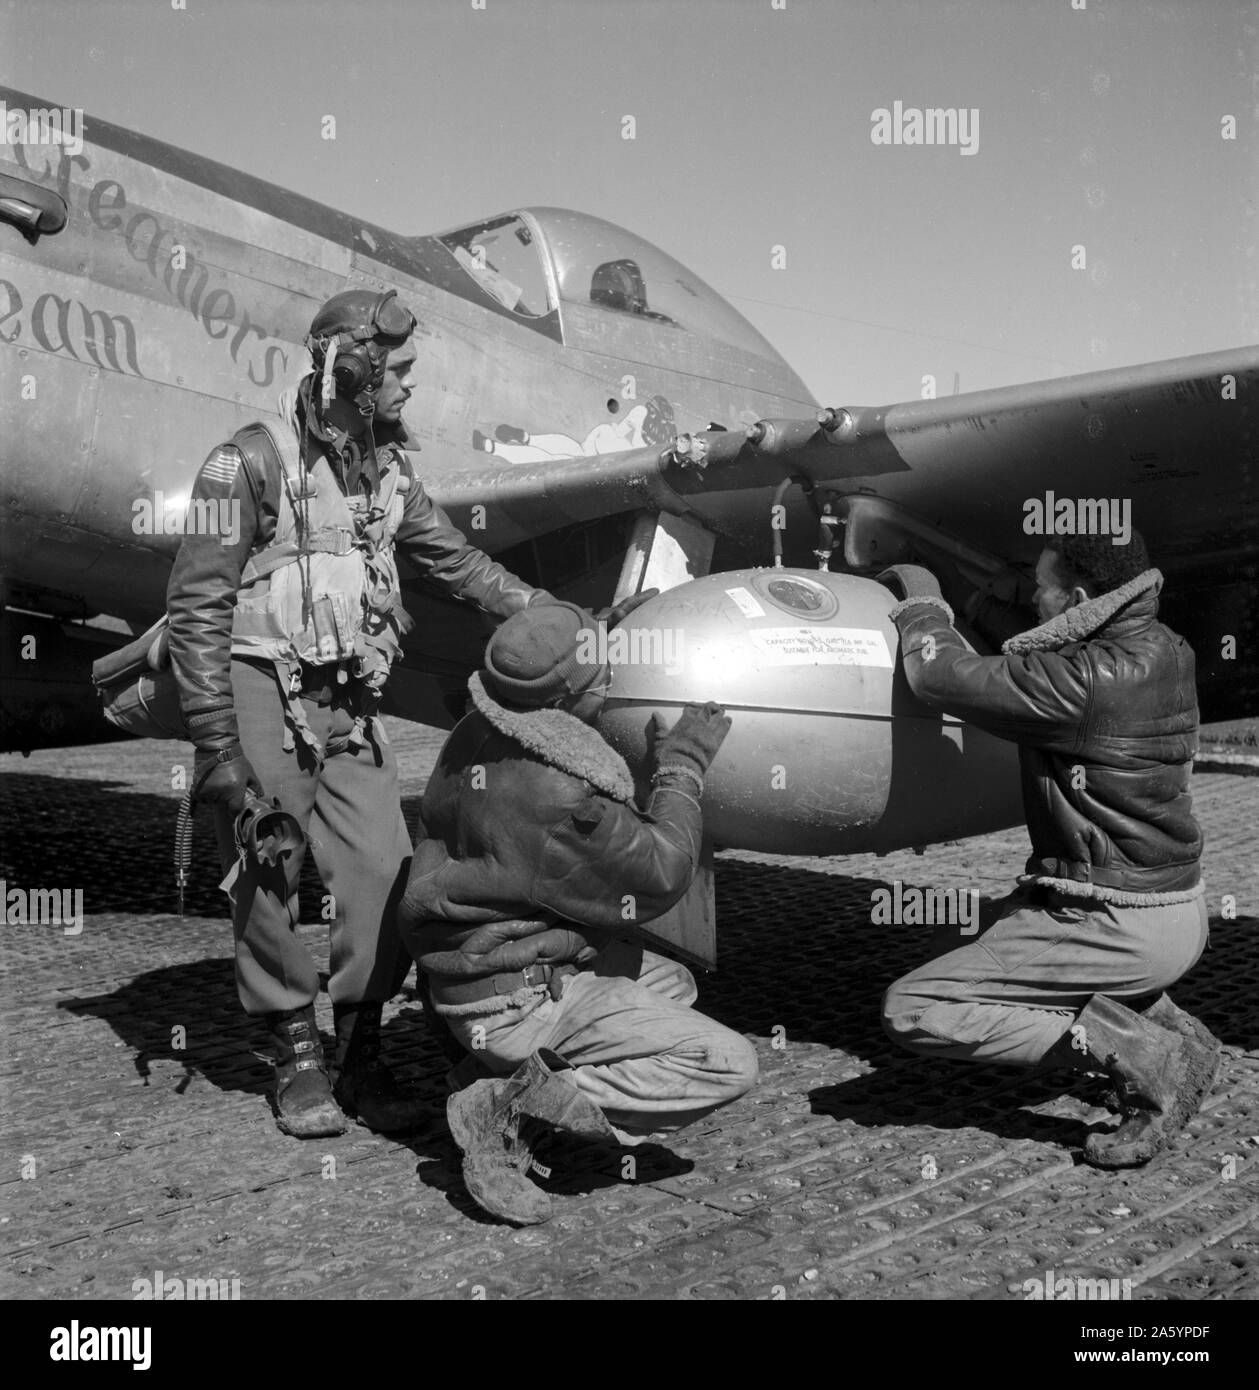 Photographie d'Edward C. Gleed et deux aviateurs, Ramitelli Tuskegee non identifiés, de l'Italie. Photographié par Toni Frissell (1907-1988). Datée 1945 Banque D'Images